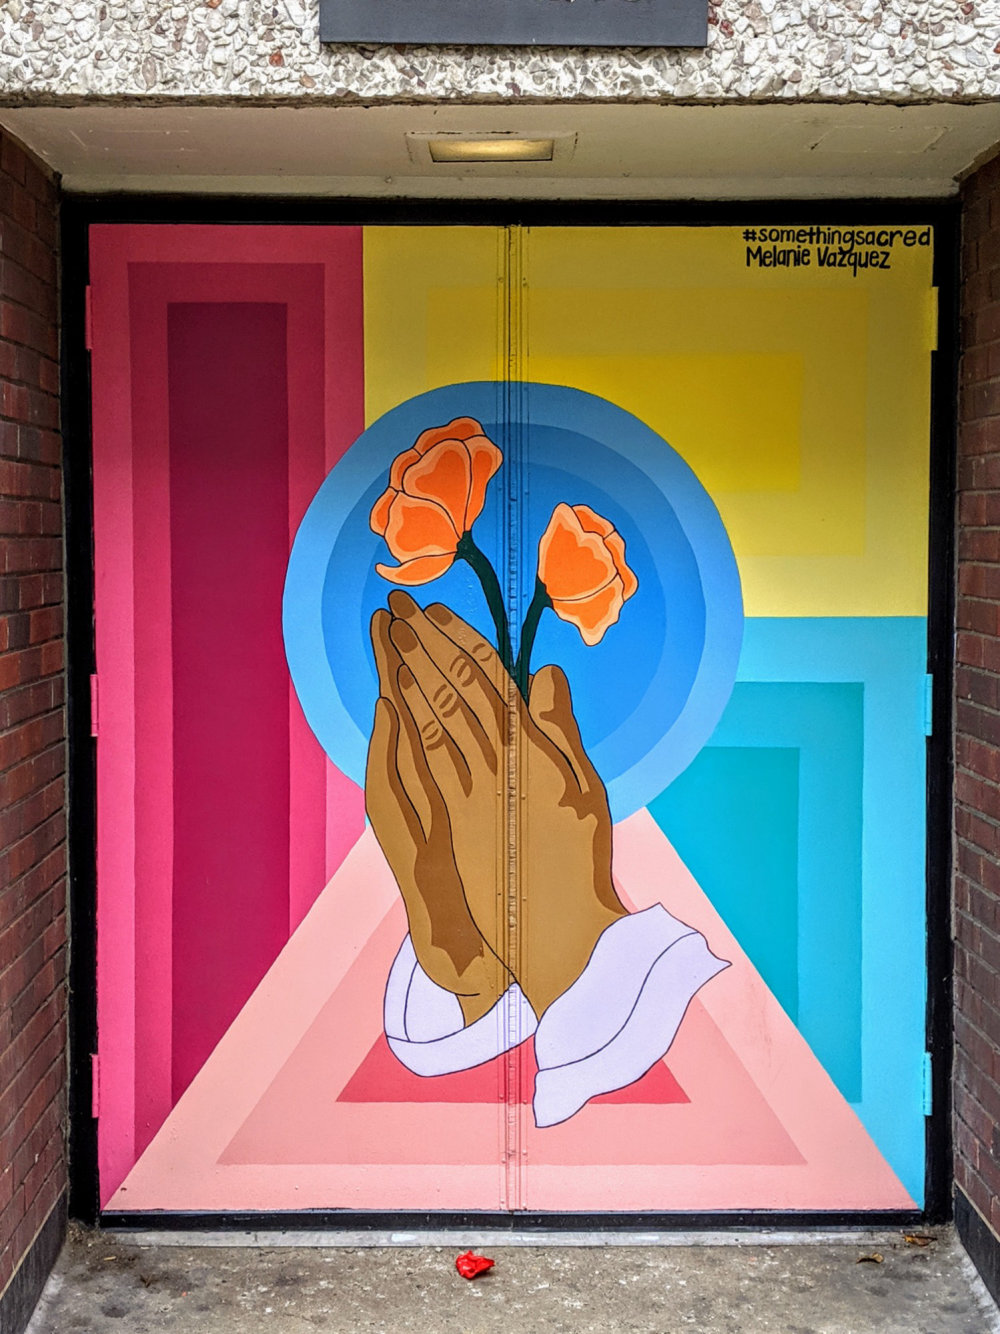 mural in Chicago by artist Melanie Vazquez.